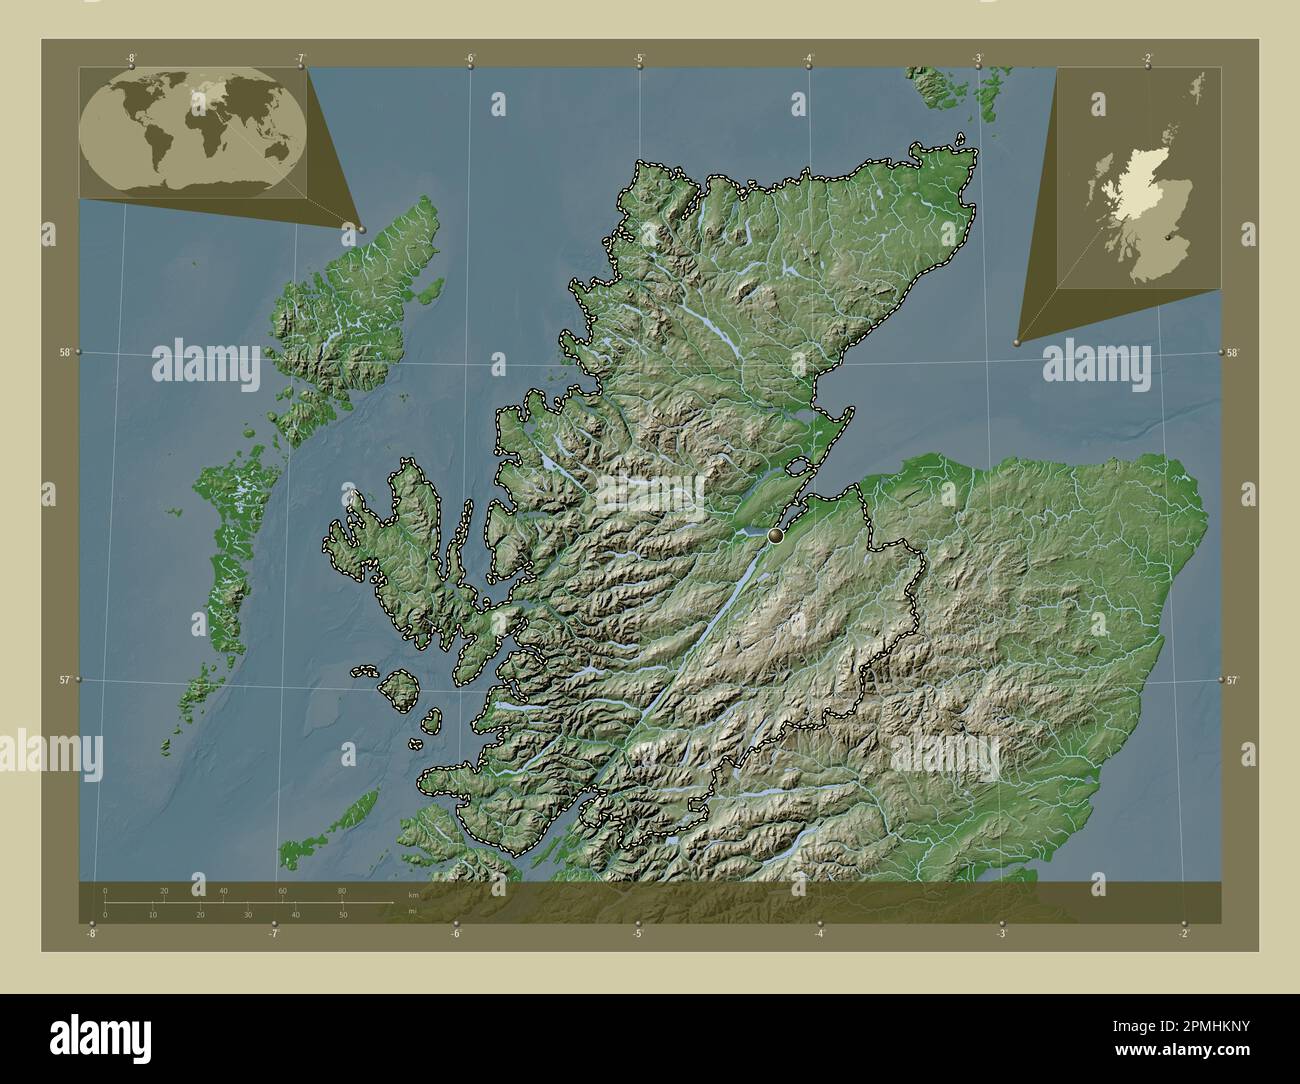 Highland - Wikipedia